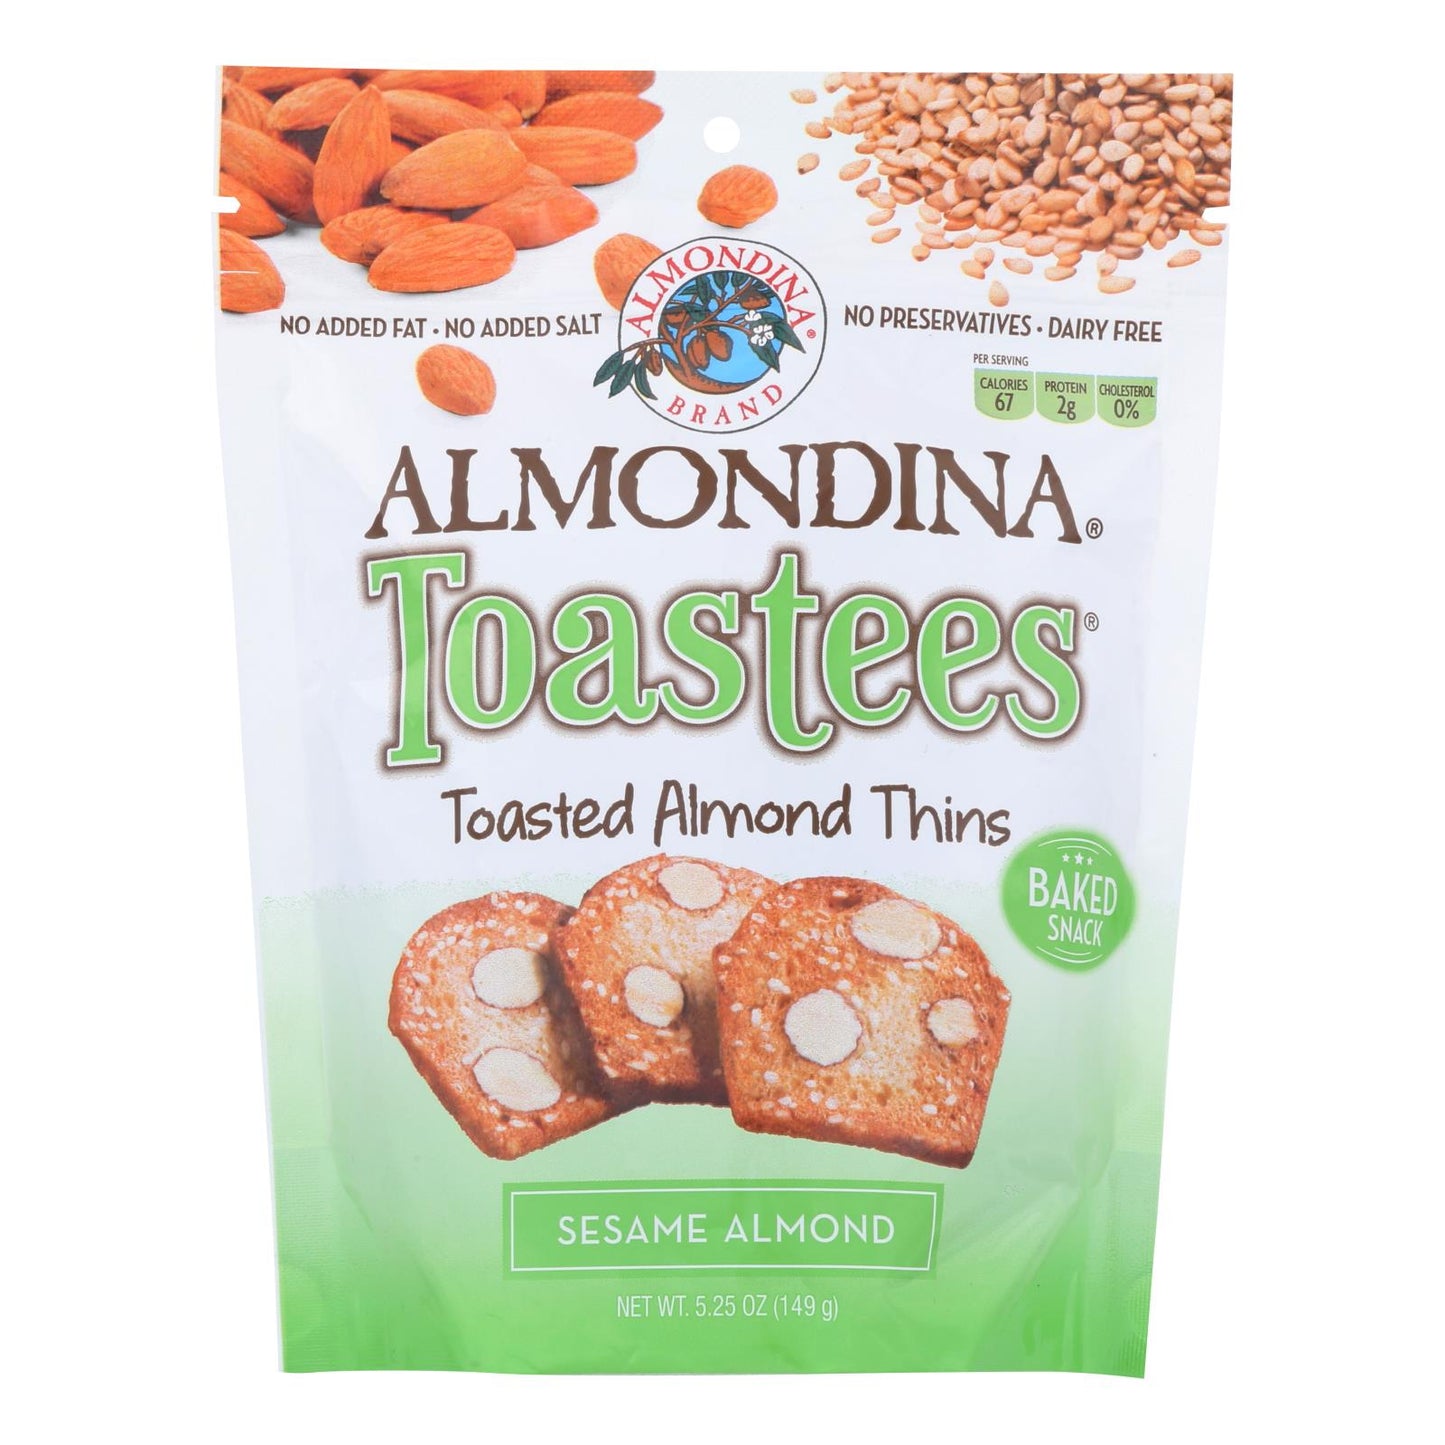 Almondina - Toastees - Toasted Almond Thins - Sesame Almond - Case Of 12 - 5.25 Oz.